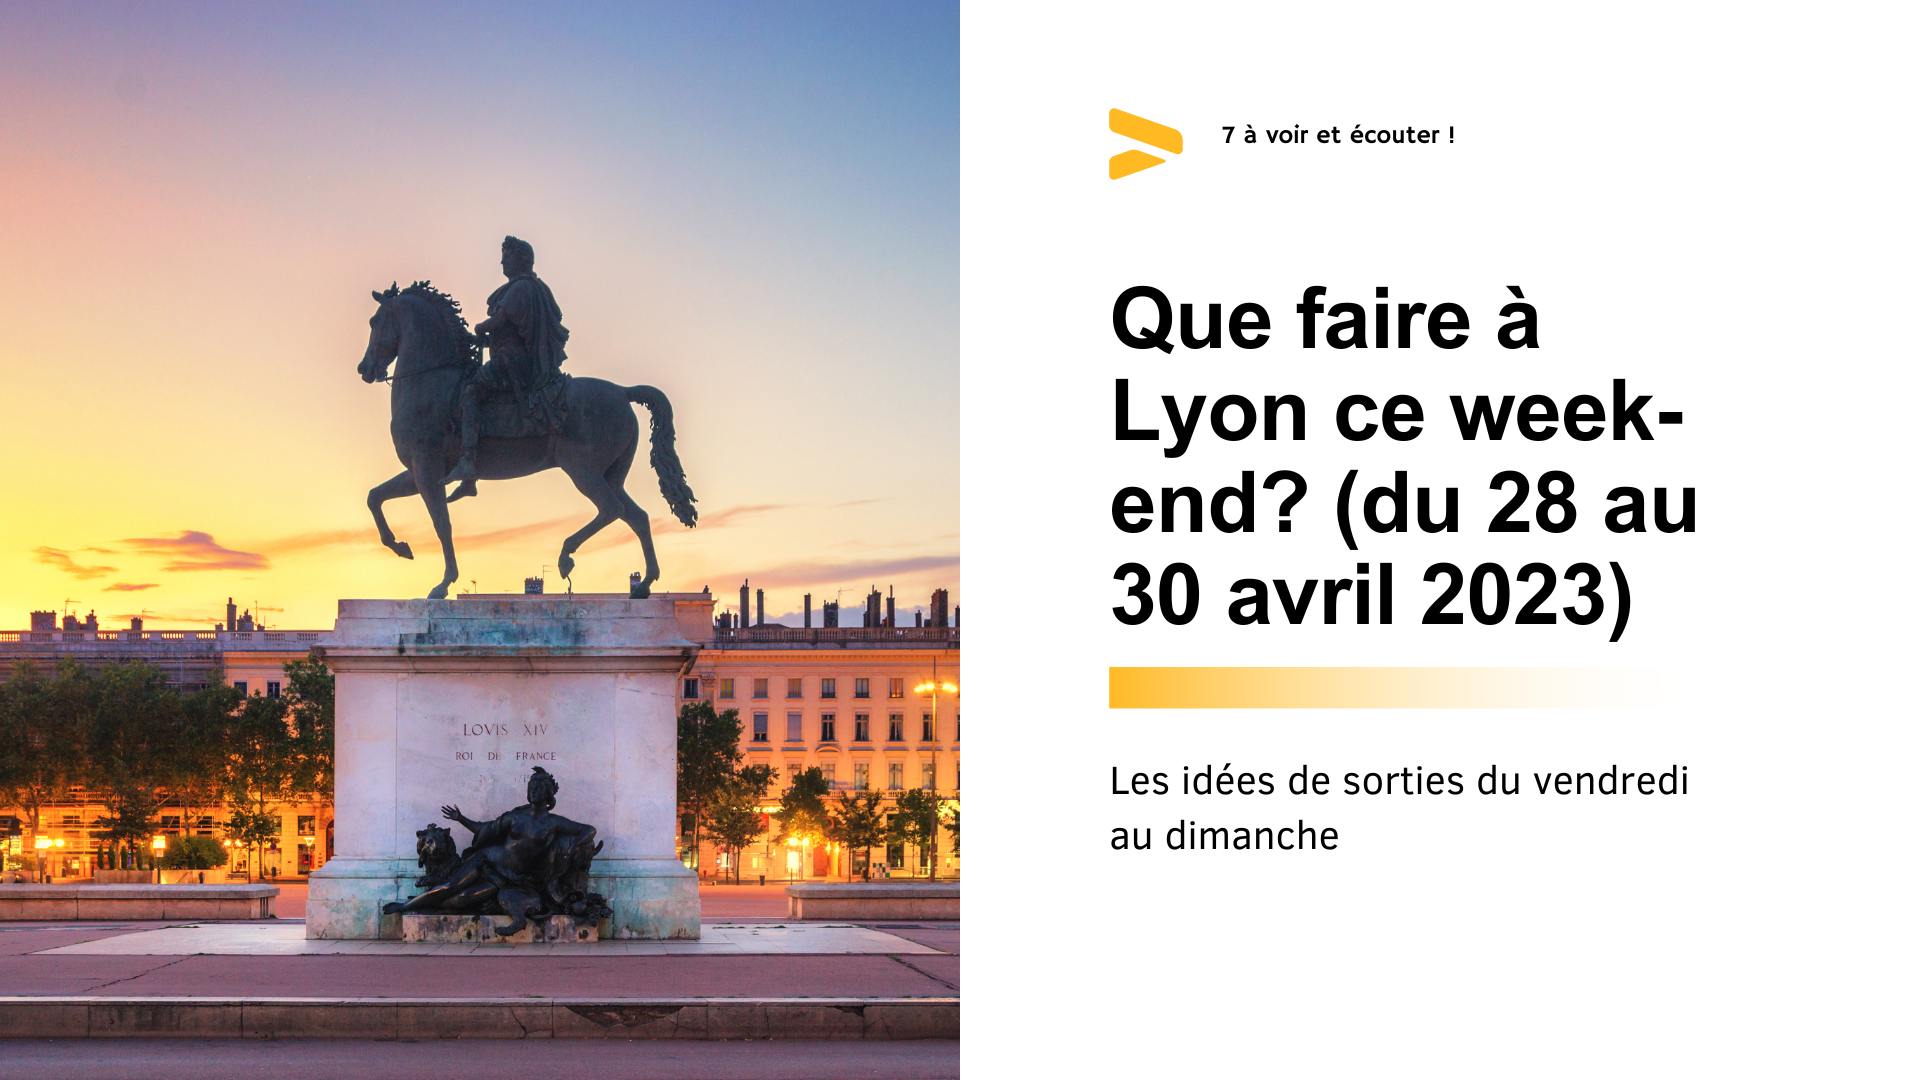 Que faire à Lyon ce week-end ? (28 au 30 avril 2023)